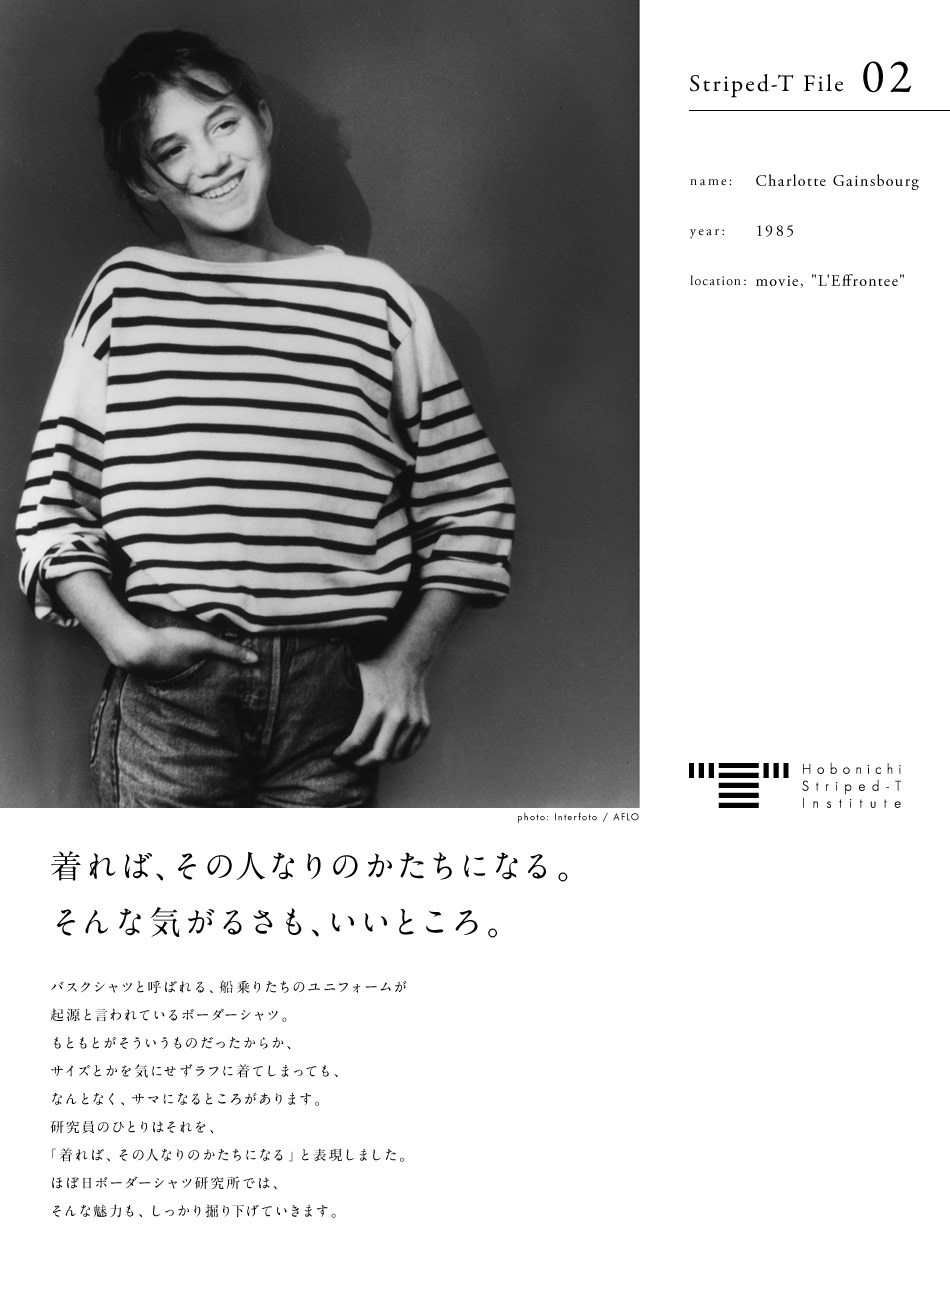 Hobonichi Striped-T Institute  Striped-T File 02  name: Charlotte Gainsbourg  year: 1954  location: movie, "L'Effrontee"  photo: Interfoto / AFLO　着れば、その人なりのかたちになる。そんな気がるさも、いいところ。  バスクシャツと呼ばれる、船乗りたちのユニフォームが起源と言われているボーダーシャツ。もともとがそういうものだったからか、サイズとかを気にせずラフに着てしまっても、なんとなく、サマになるところがあります。研究員のひとりはそれを、「着れば、その人なりのかたちになる」と表現しました。ほぼ日ボーダーシャツ研究所では、そんな魅力も、しっかり掘り下げていきます。ほぼ日ボーダーシャツ研究所、始動します。